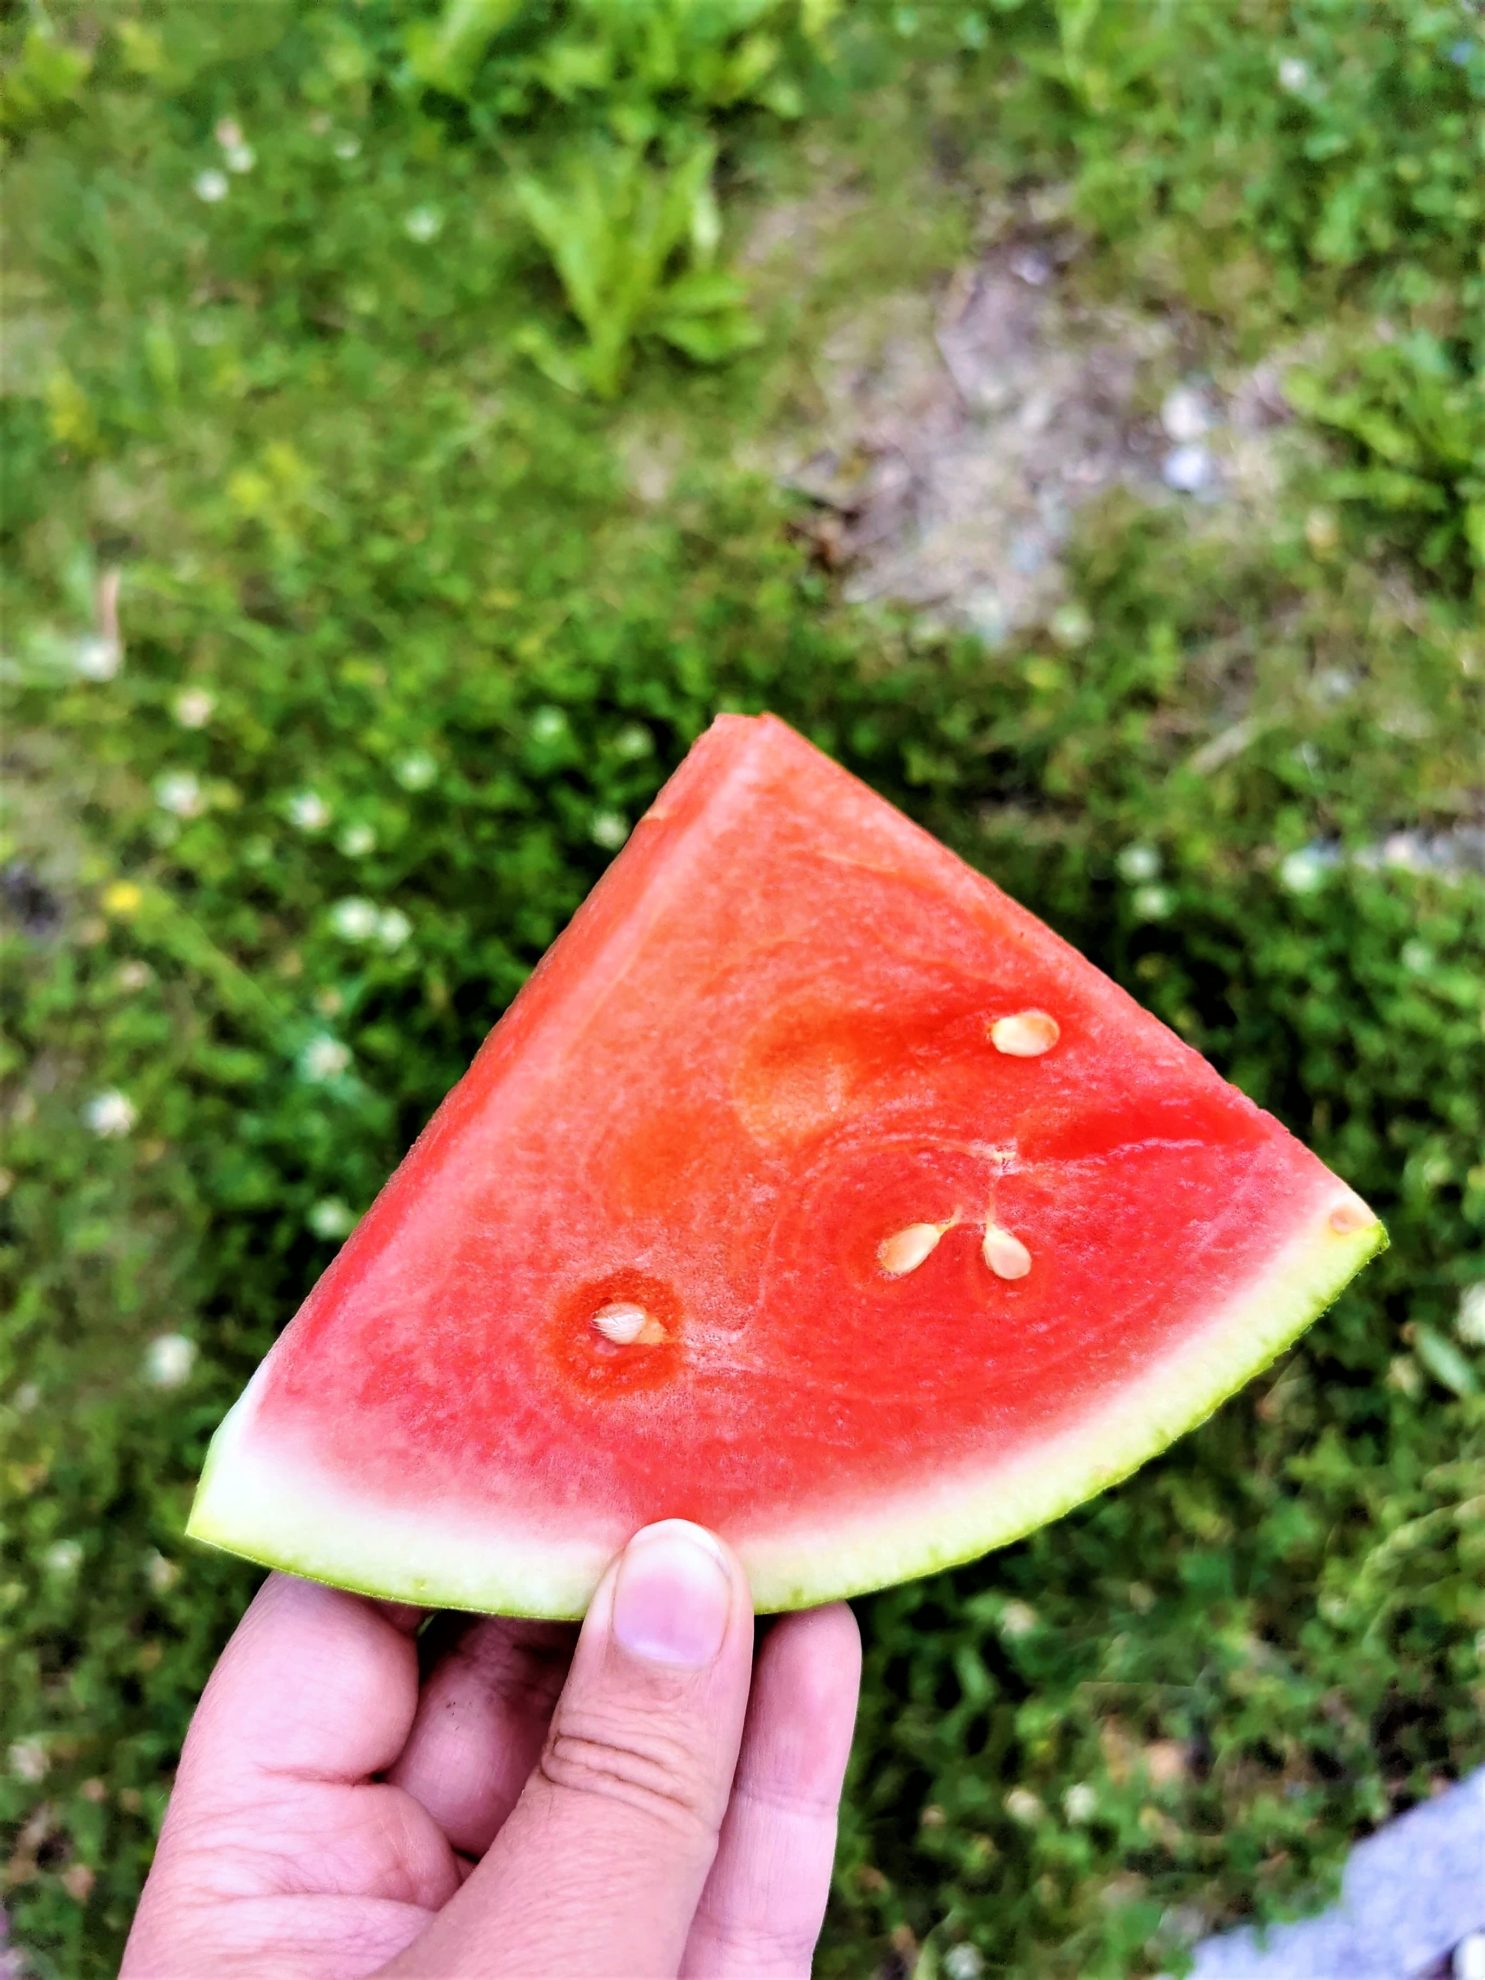 Wassermelone als gesunder Snack am Nachmittag!